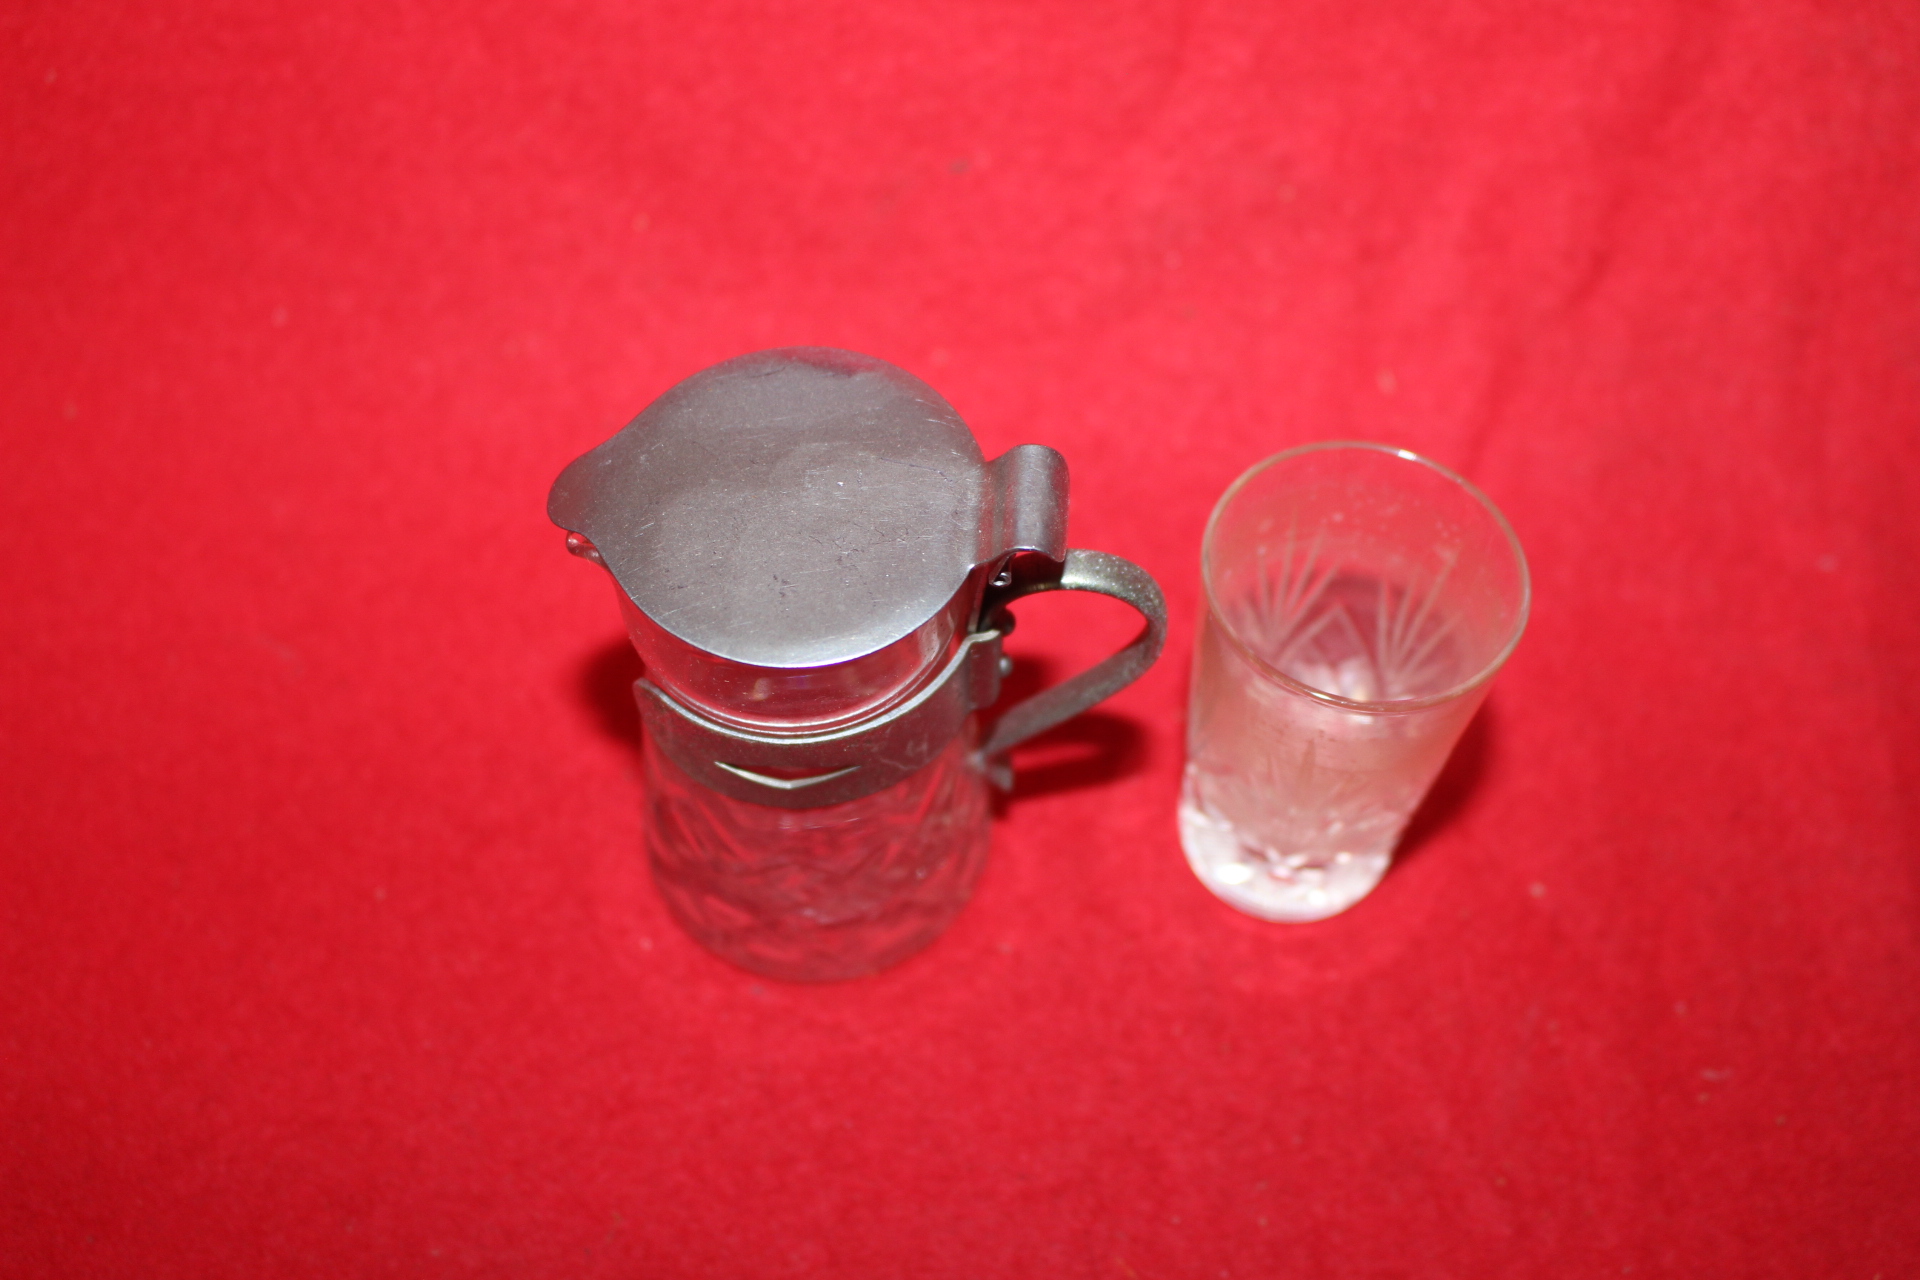 근대사-조각된 유리잔과 유리통